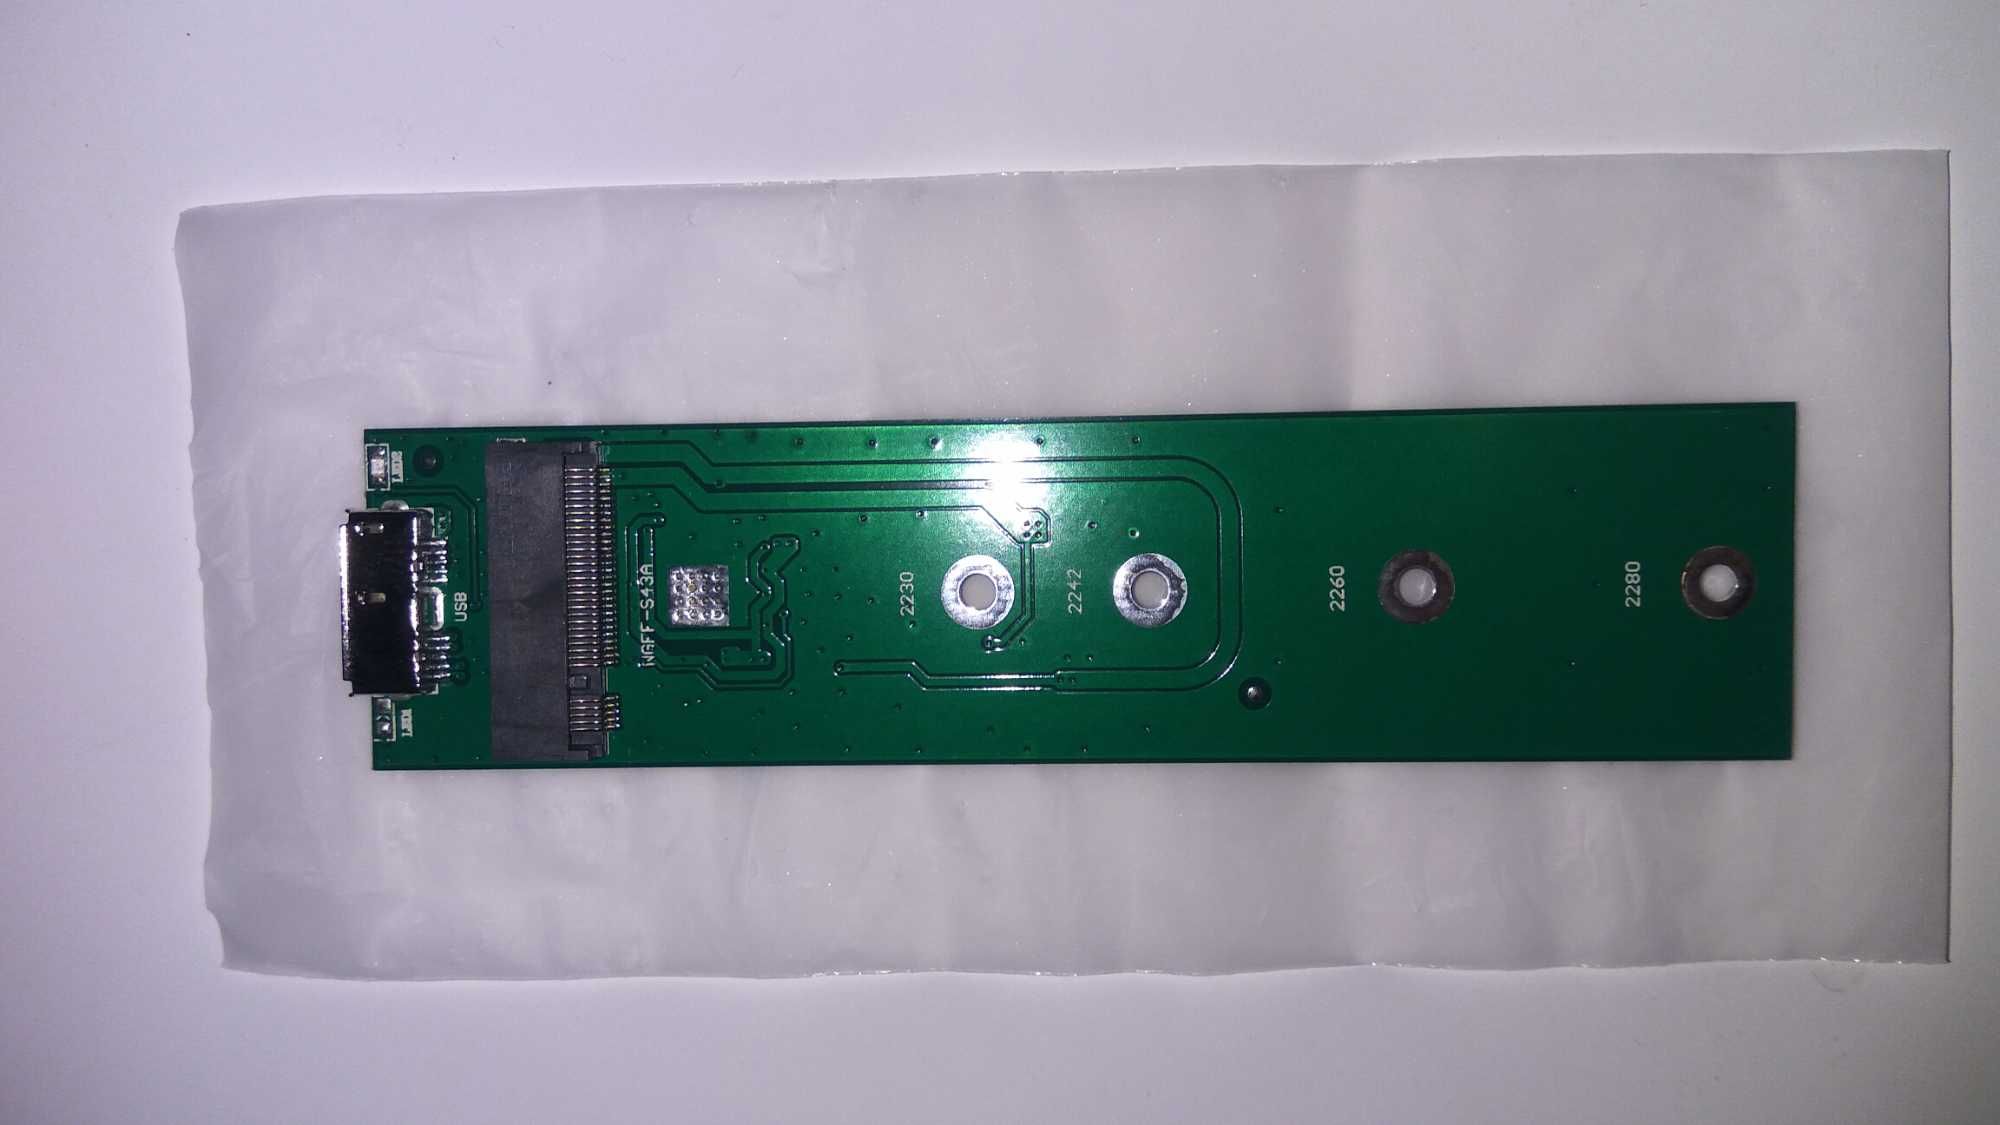 Портативний корпус ELUTENG M.2 NGFF (2280-60-42-30) Key B/B+M USB C3.0